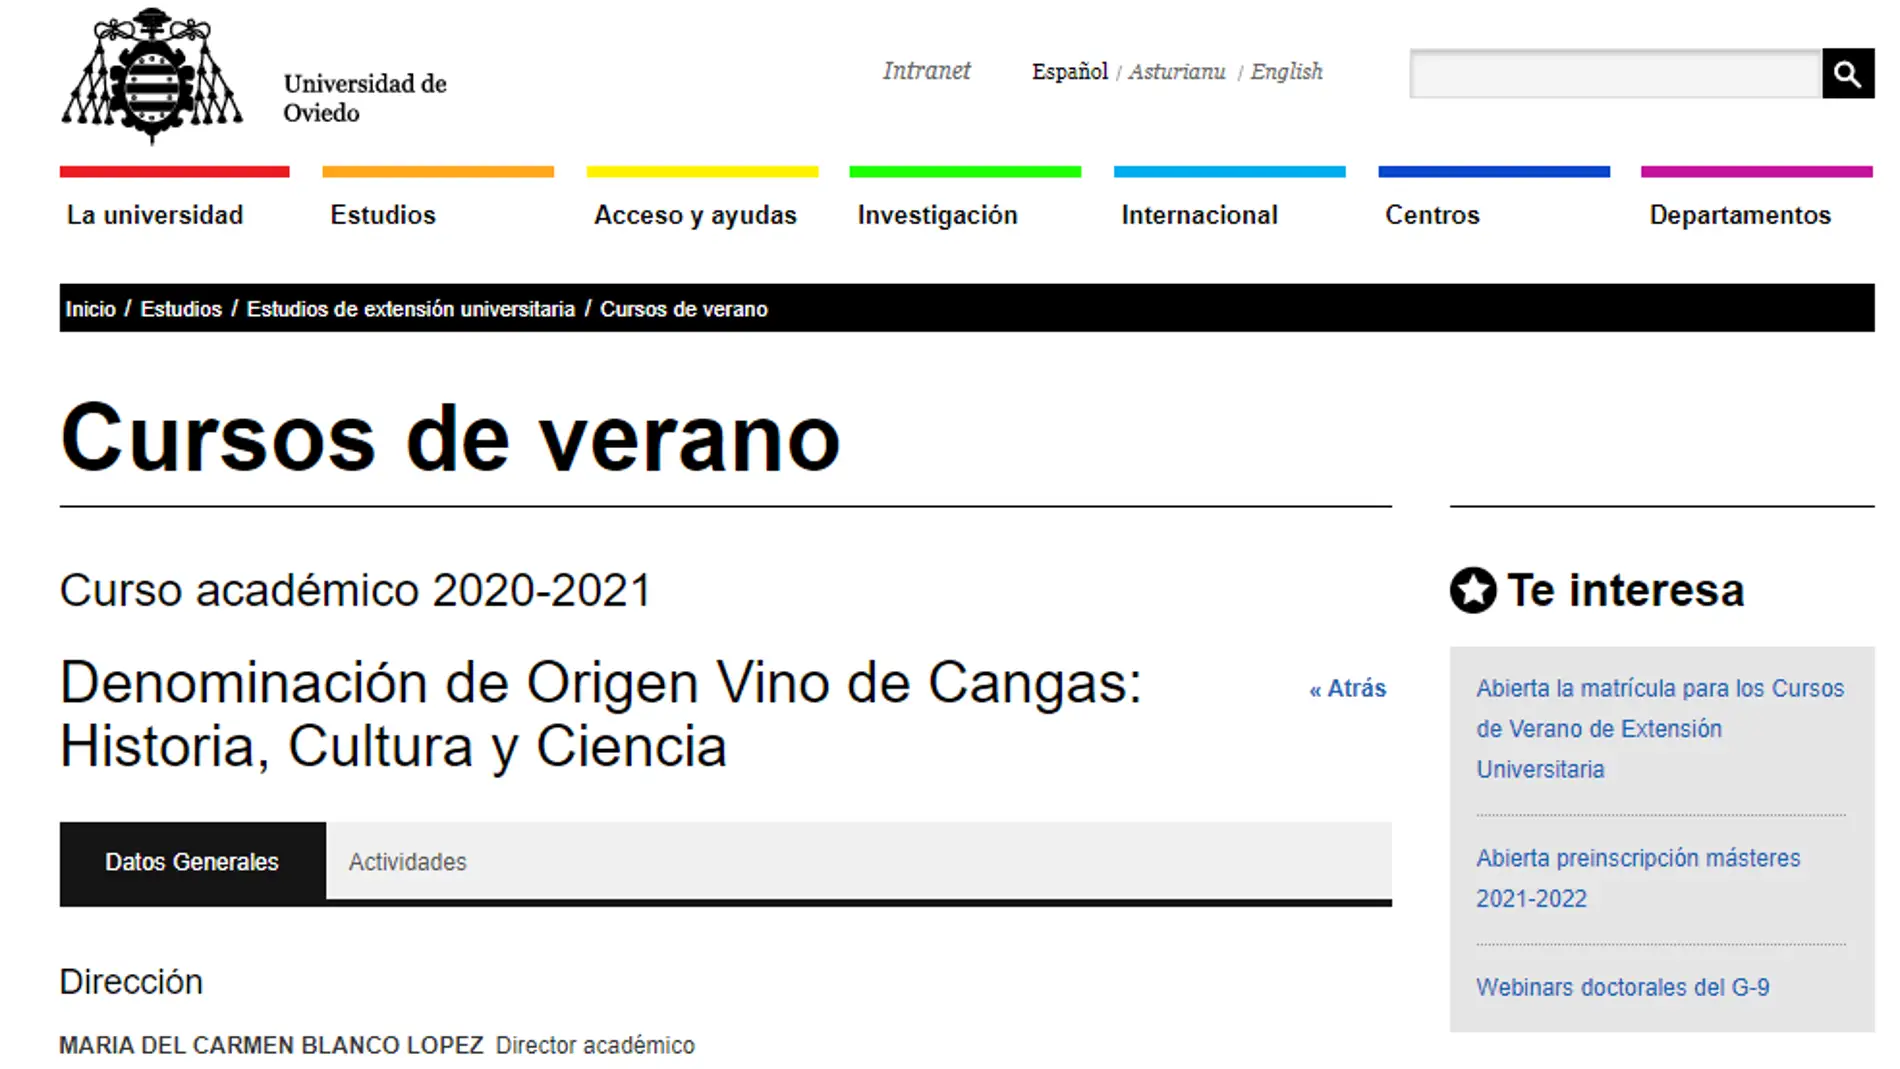 Denominación de Origen Vino de Cangas: Historia, Cultura y Ciencia 